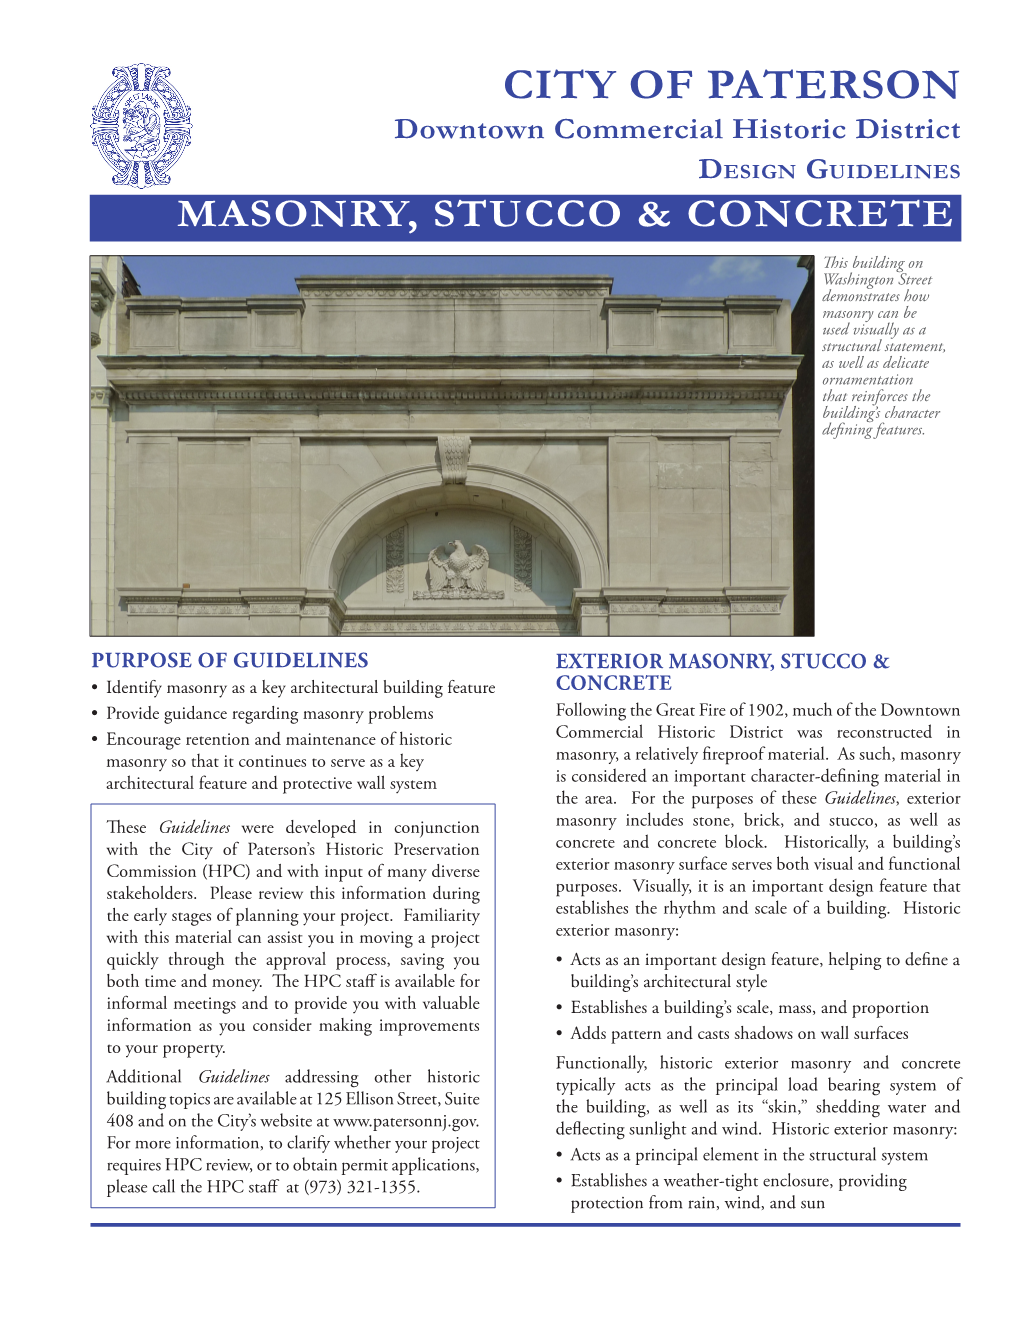 Masonry, Stucco & Concrete